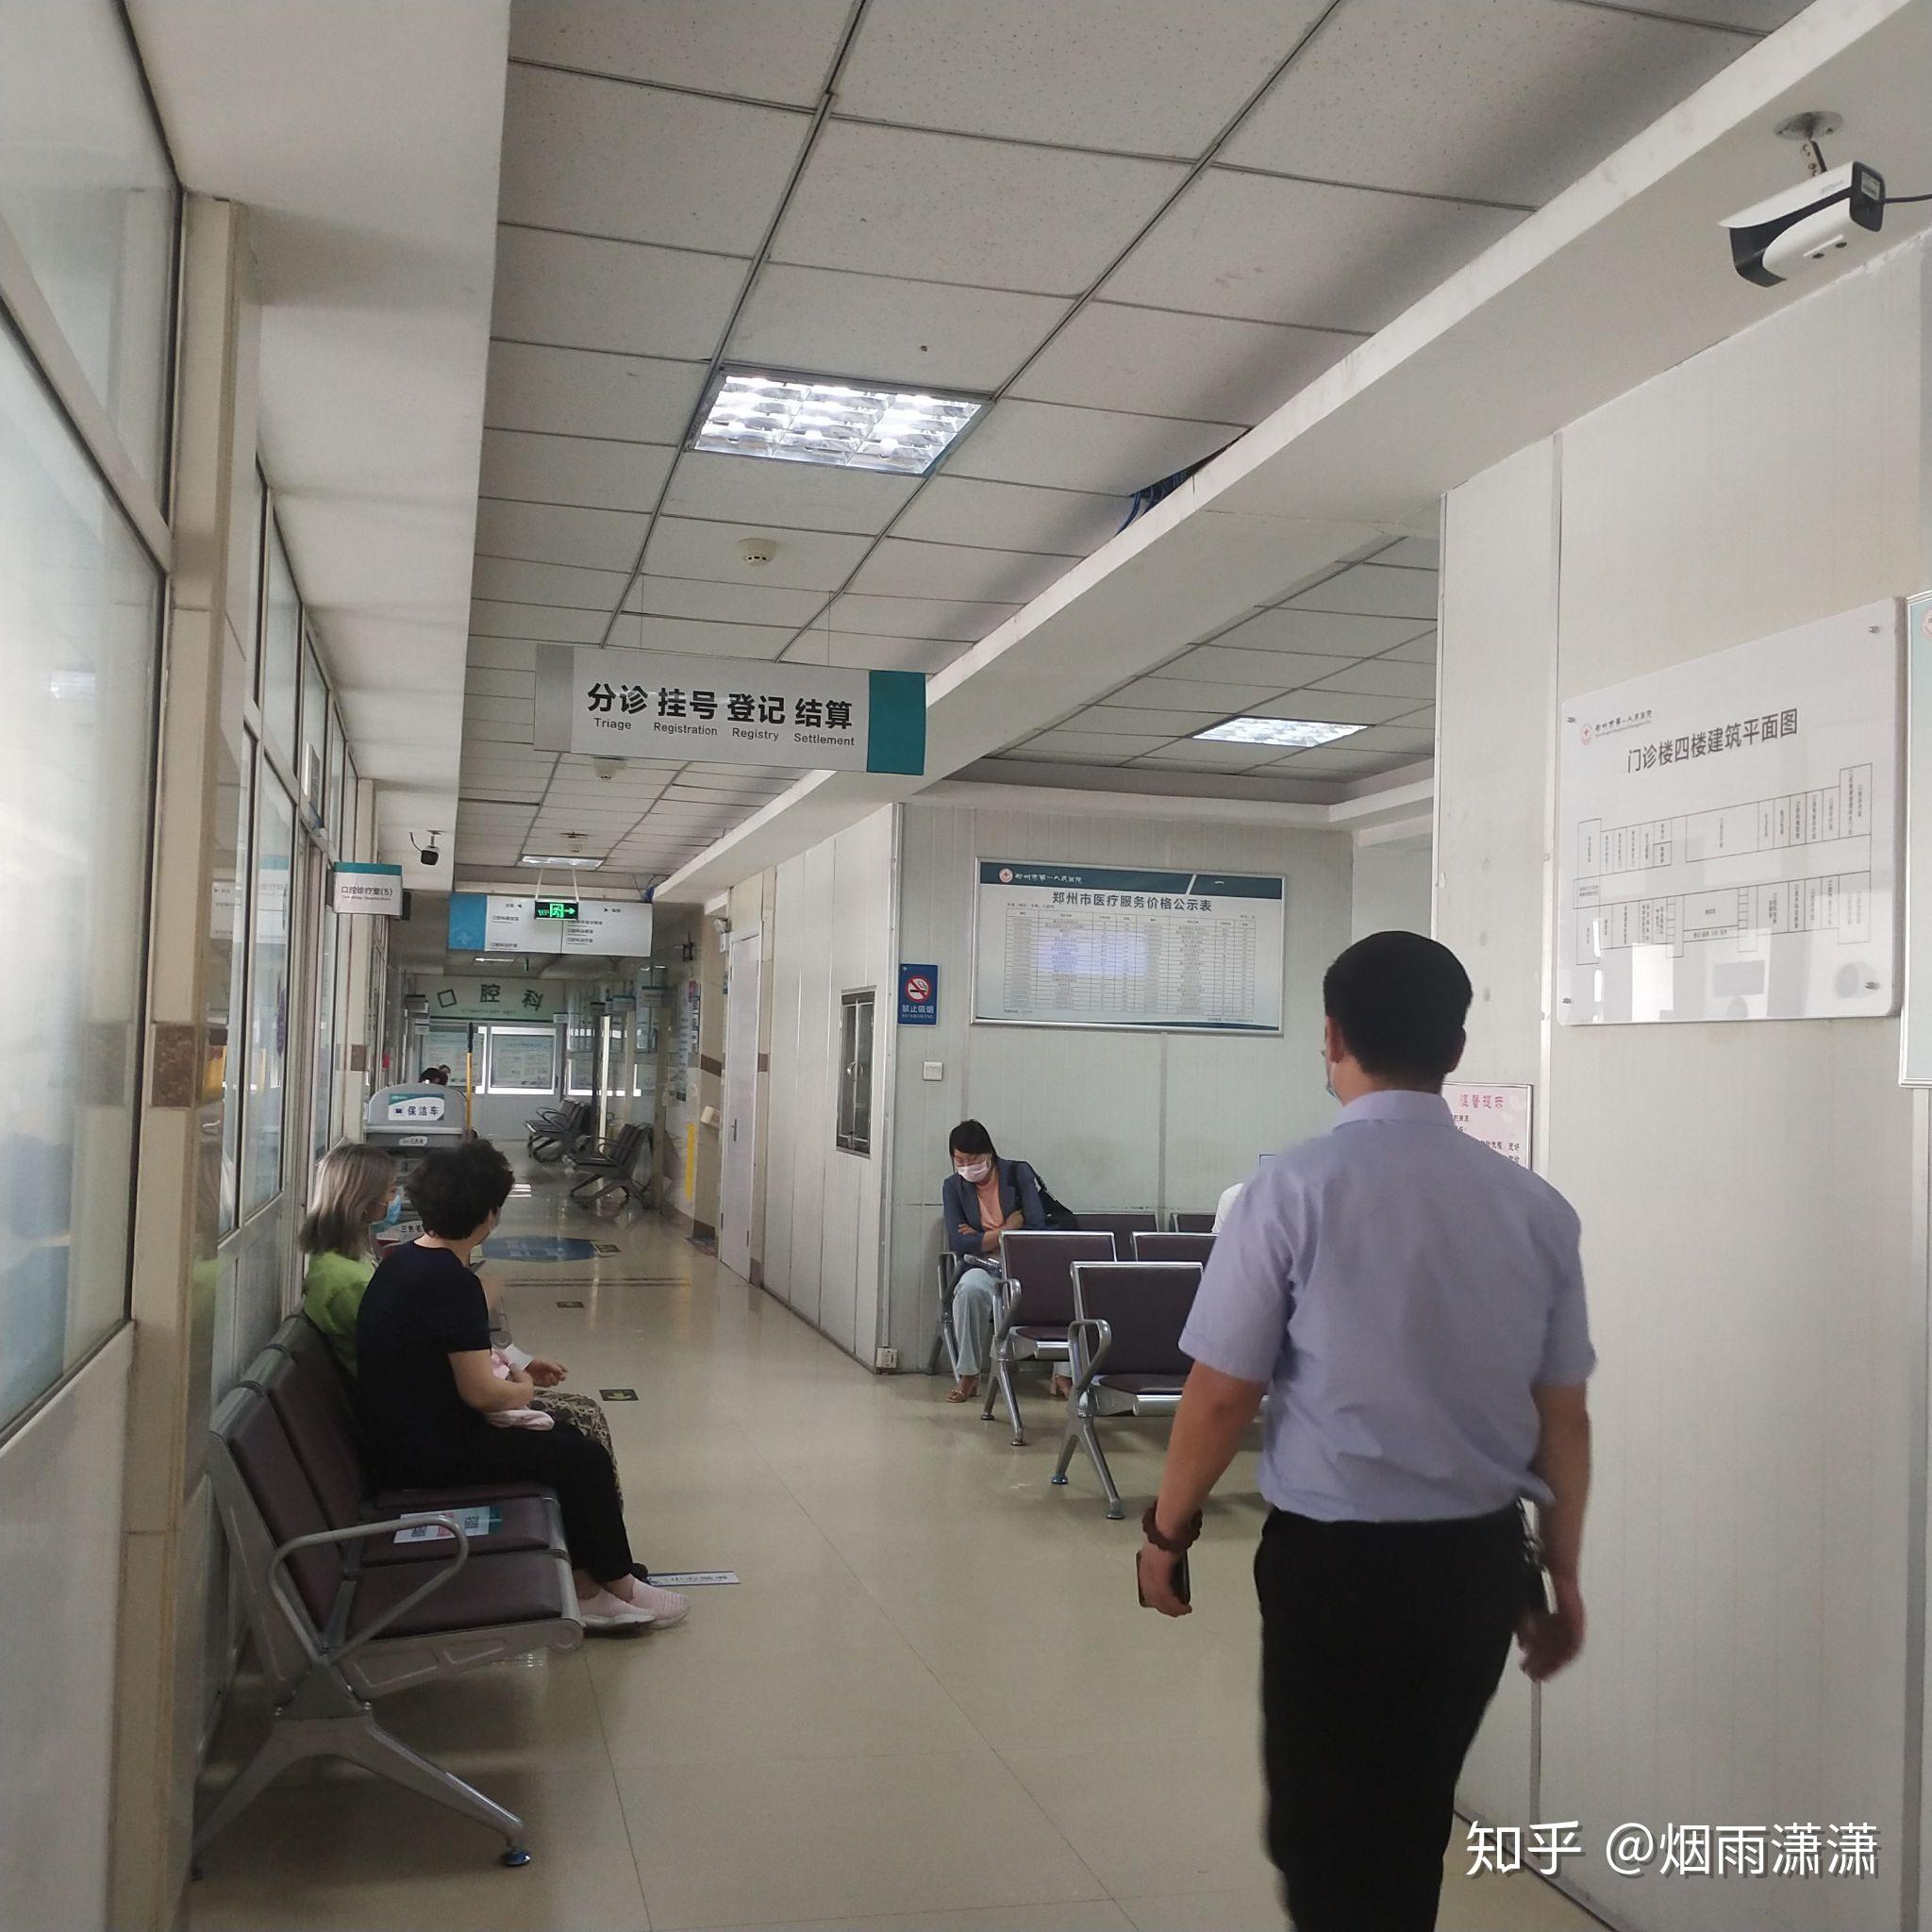 第三次第三次补牙了,在郑州市第一人民医院给你们的参考!